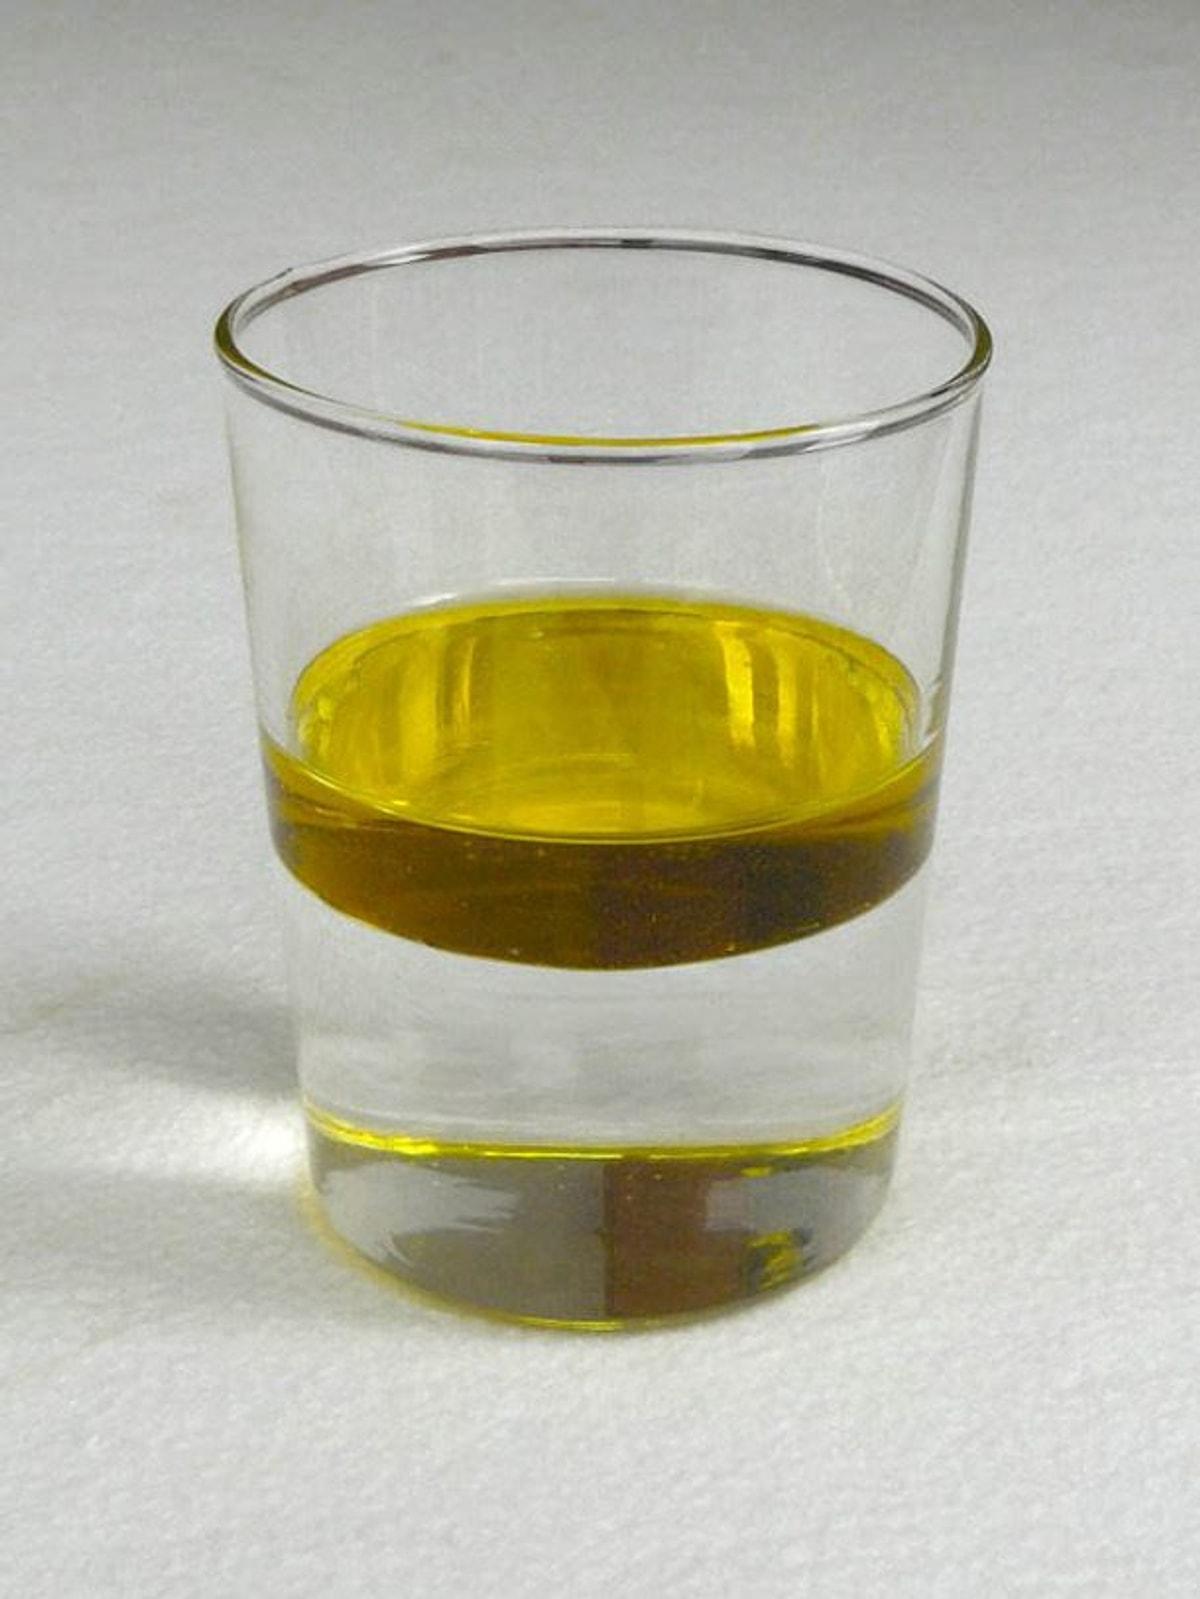 В воде масло образует. Растительное масло в стакане. Масло и вода в стакане. Смесь растительного масла и воды. Смешивание воды и растительного масла.